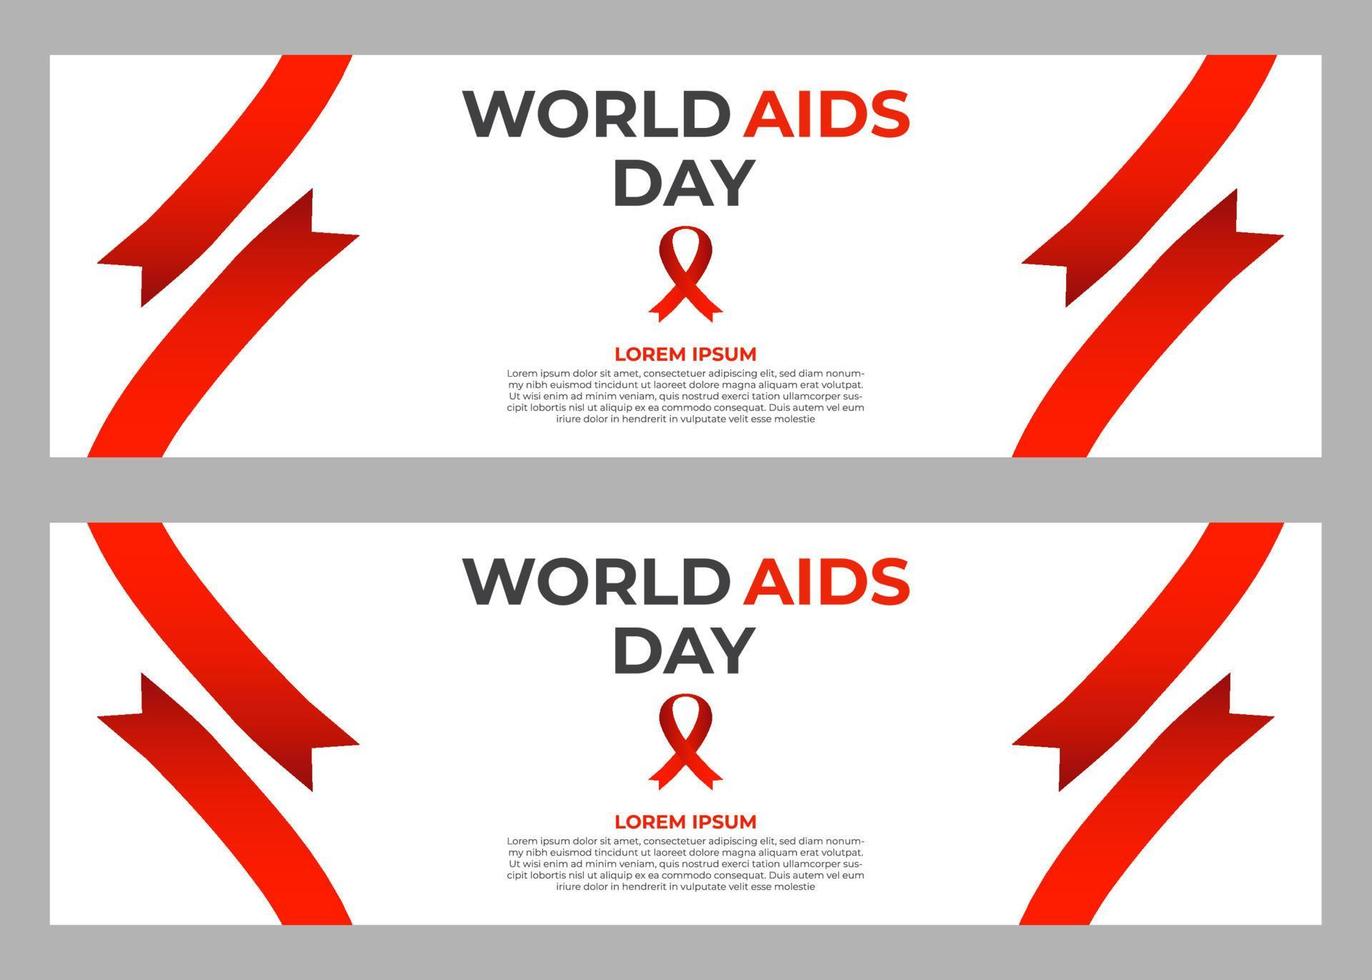 set di modelli di banner per la giornata mondiale dell'aids vettore